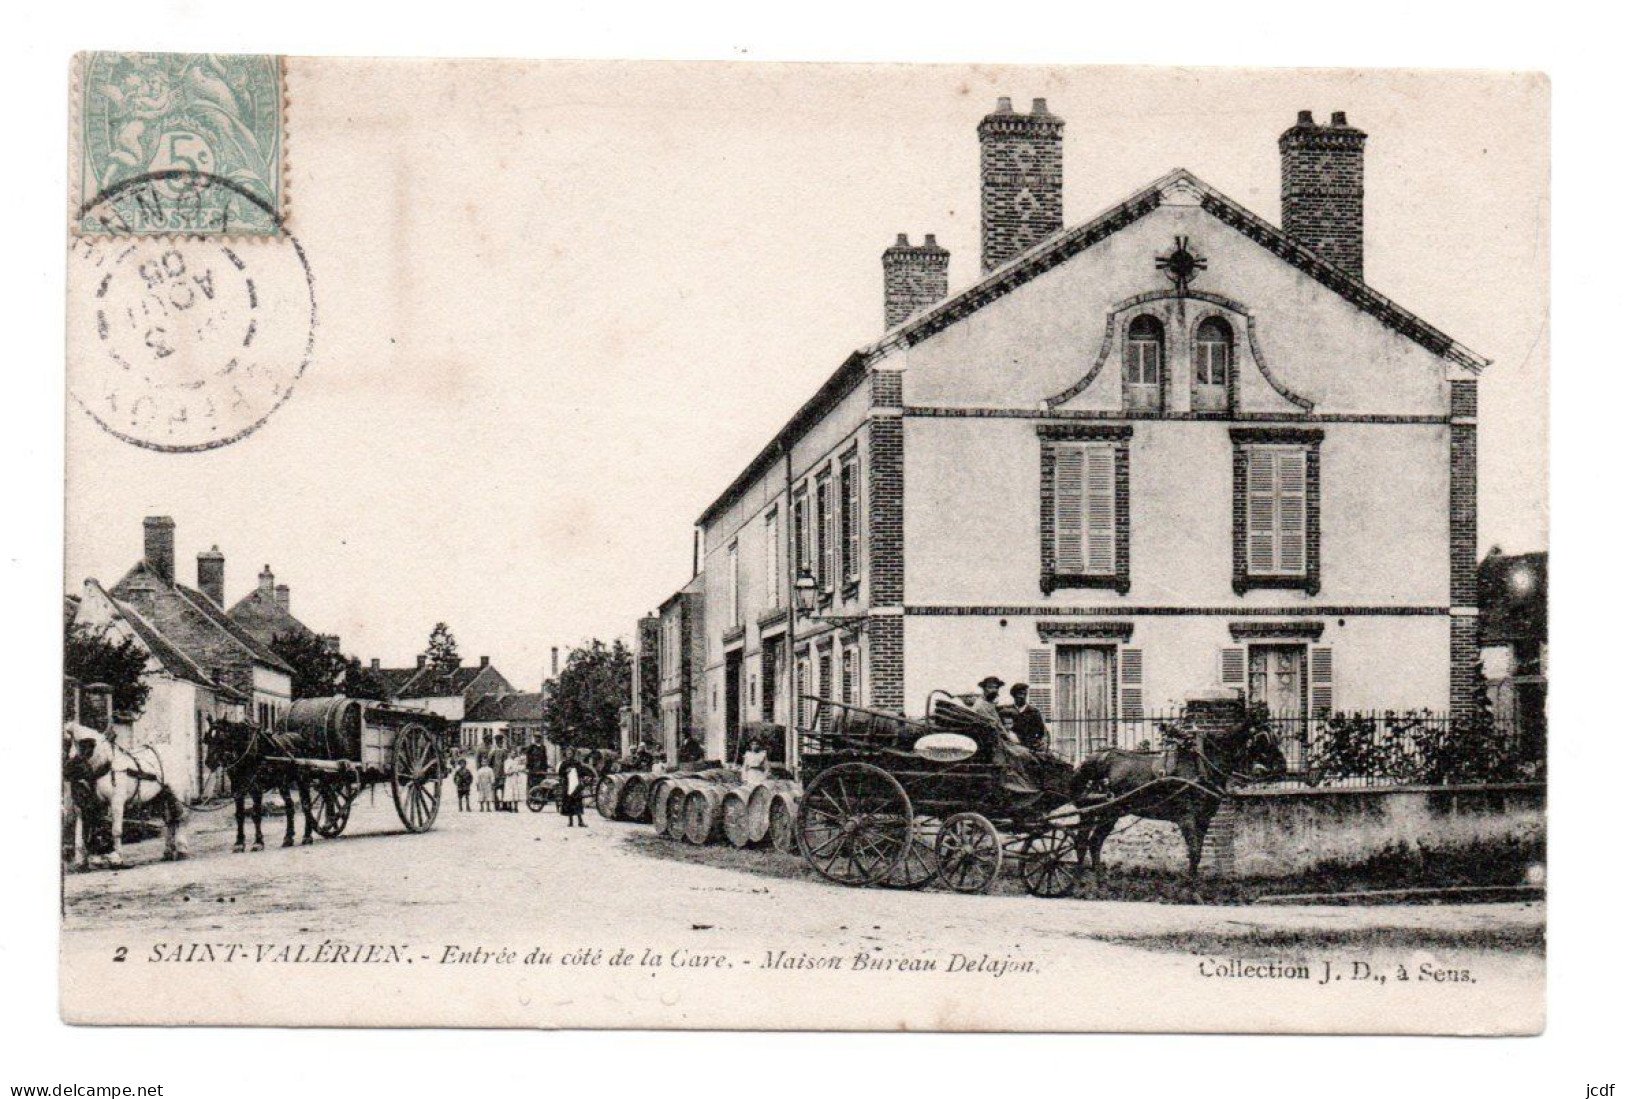 89 ST SAINT VALERIEN Entrée Du Côté De La Gare - Maison Bureau Delajon N° 2 - Coll JD 1905 - Tonnelier Négociant En Vins - Saint Valerien